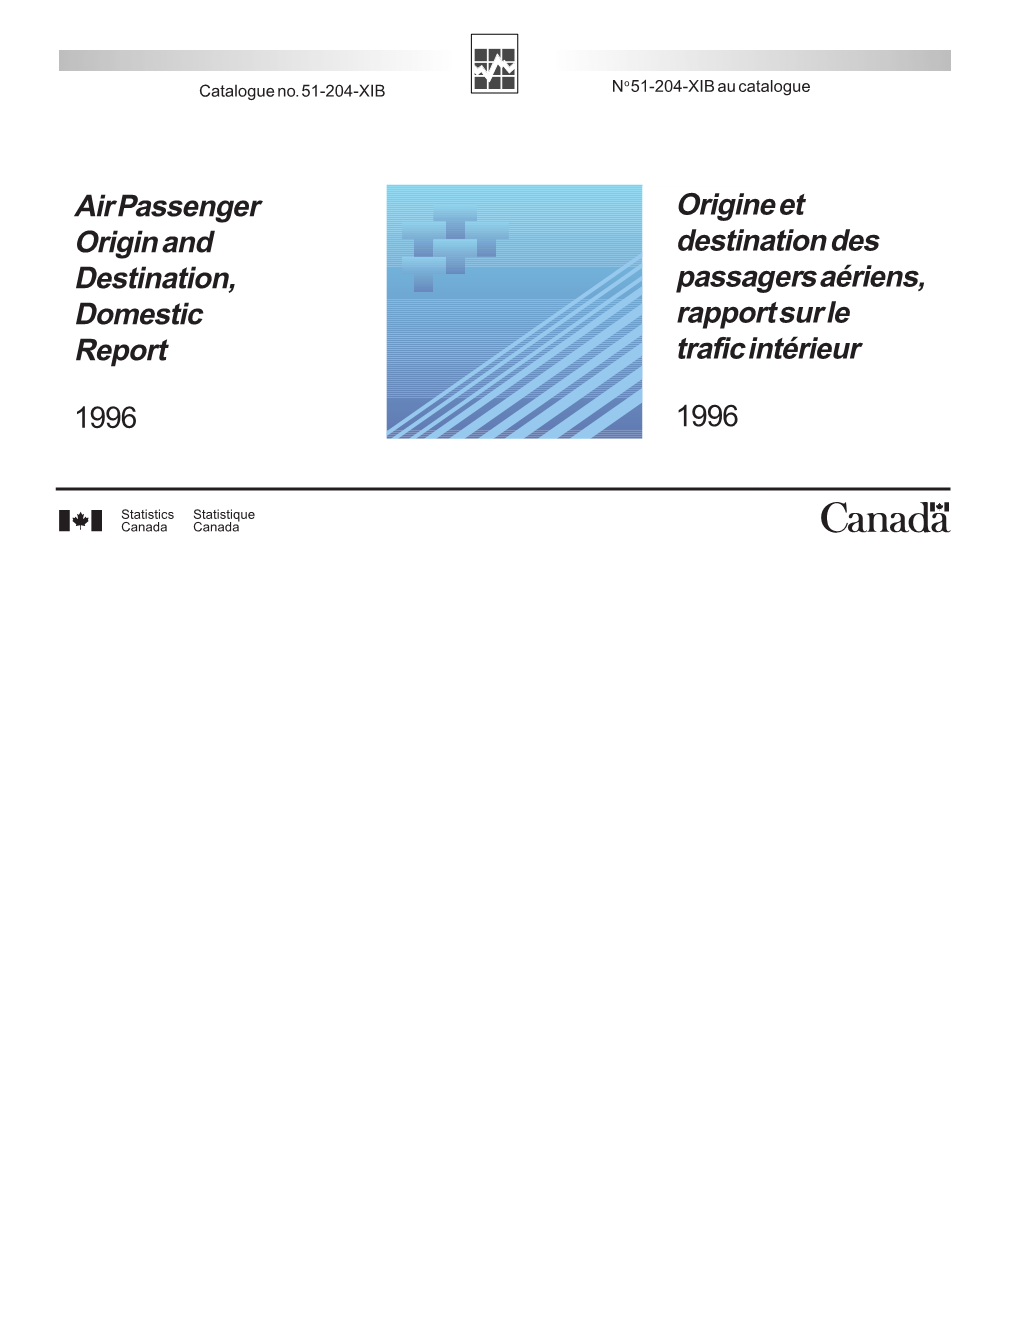 Air Passenger Origin and Destination, Domestic Report 1996 Origine Et Destination Des Passagers Aériens, Rapport Sur Le Trafic